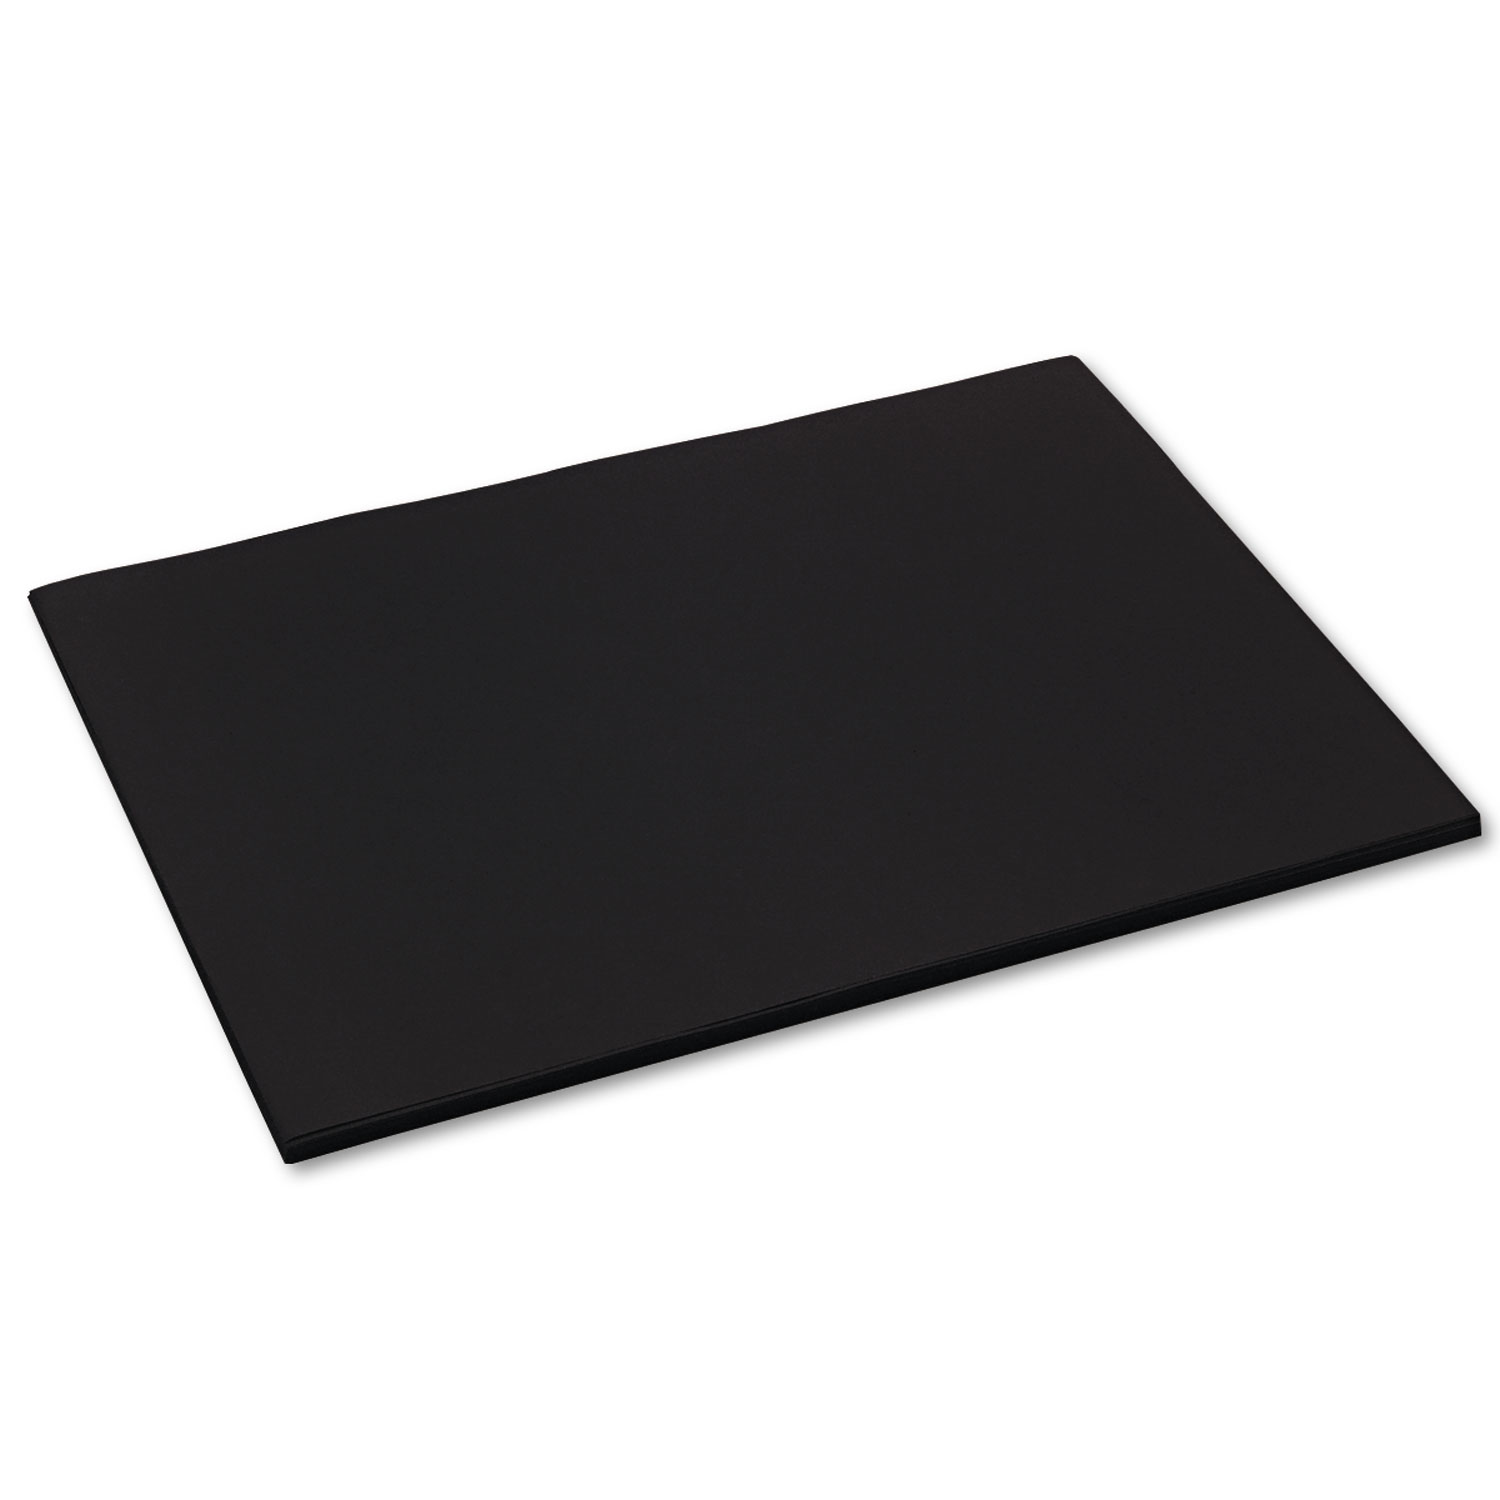  Pacon 103093 Tru-Ray Construction Paper, 76lb, 18 x 24, Black, 50/Pack (PAC103093) 